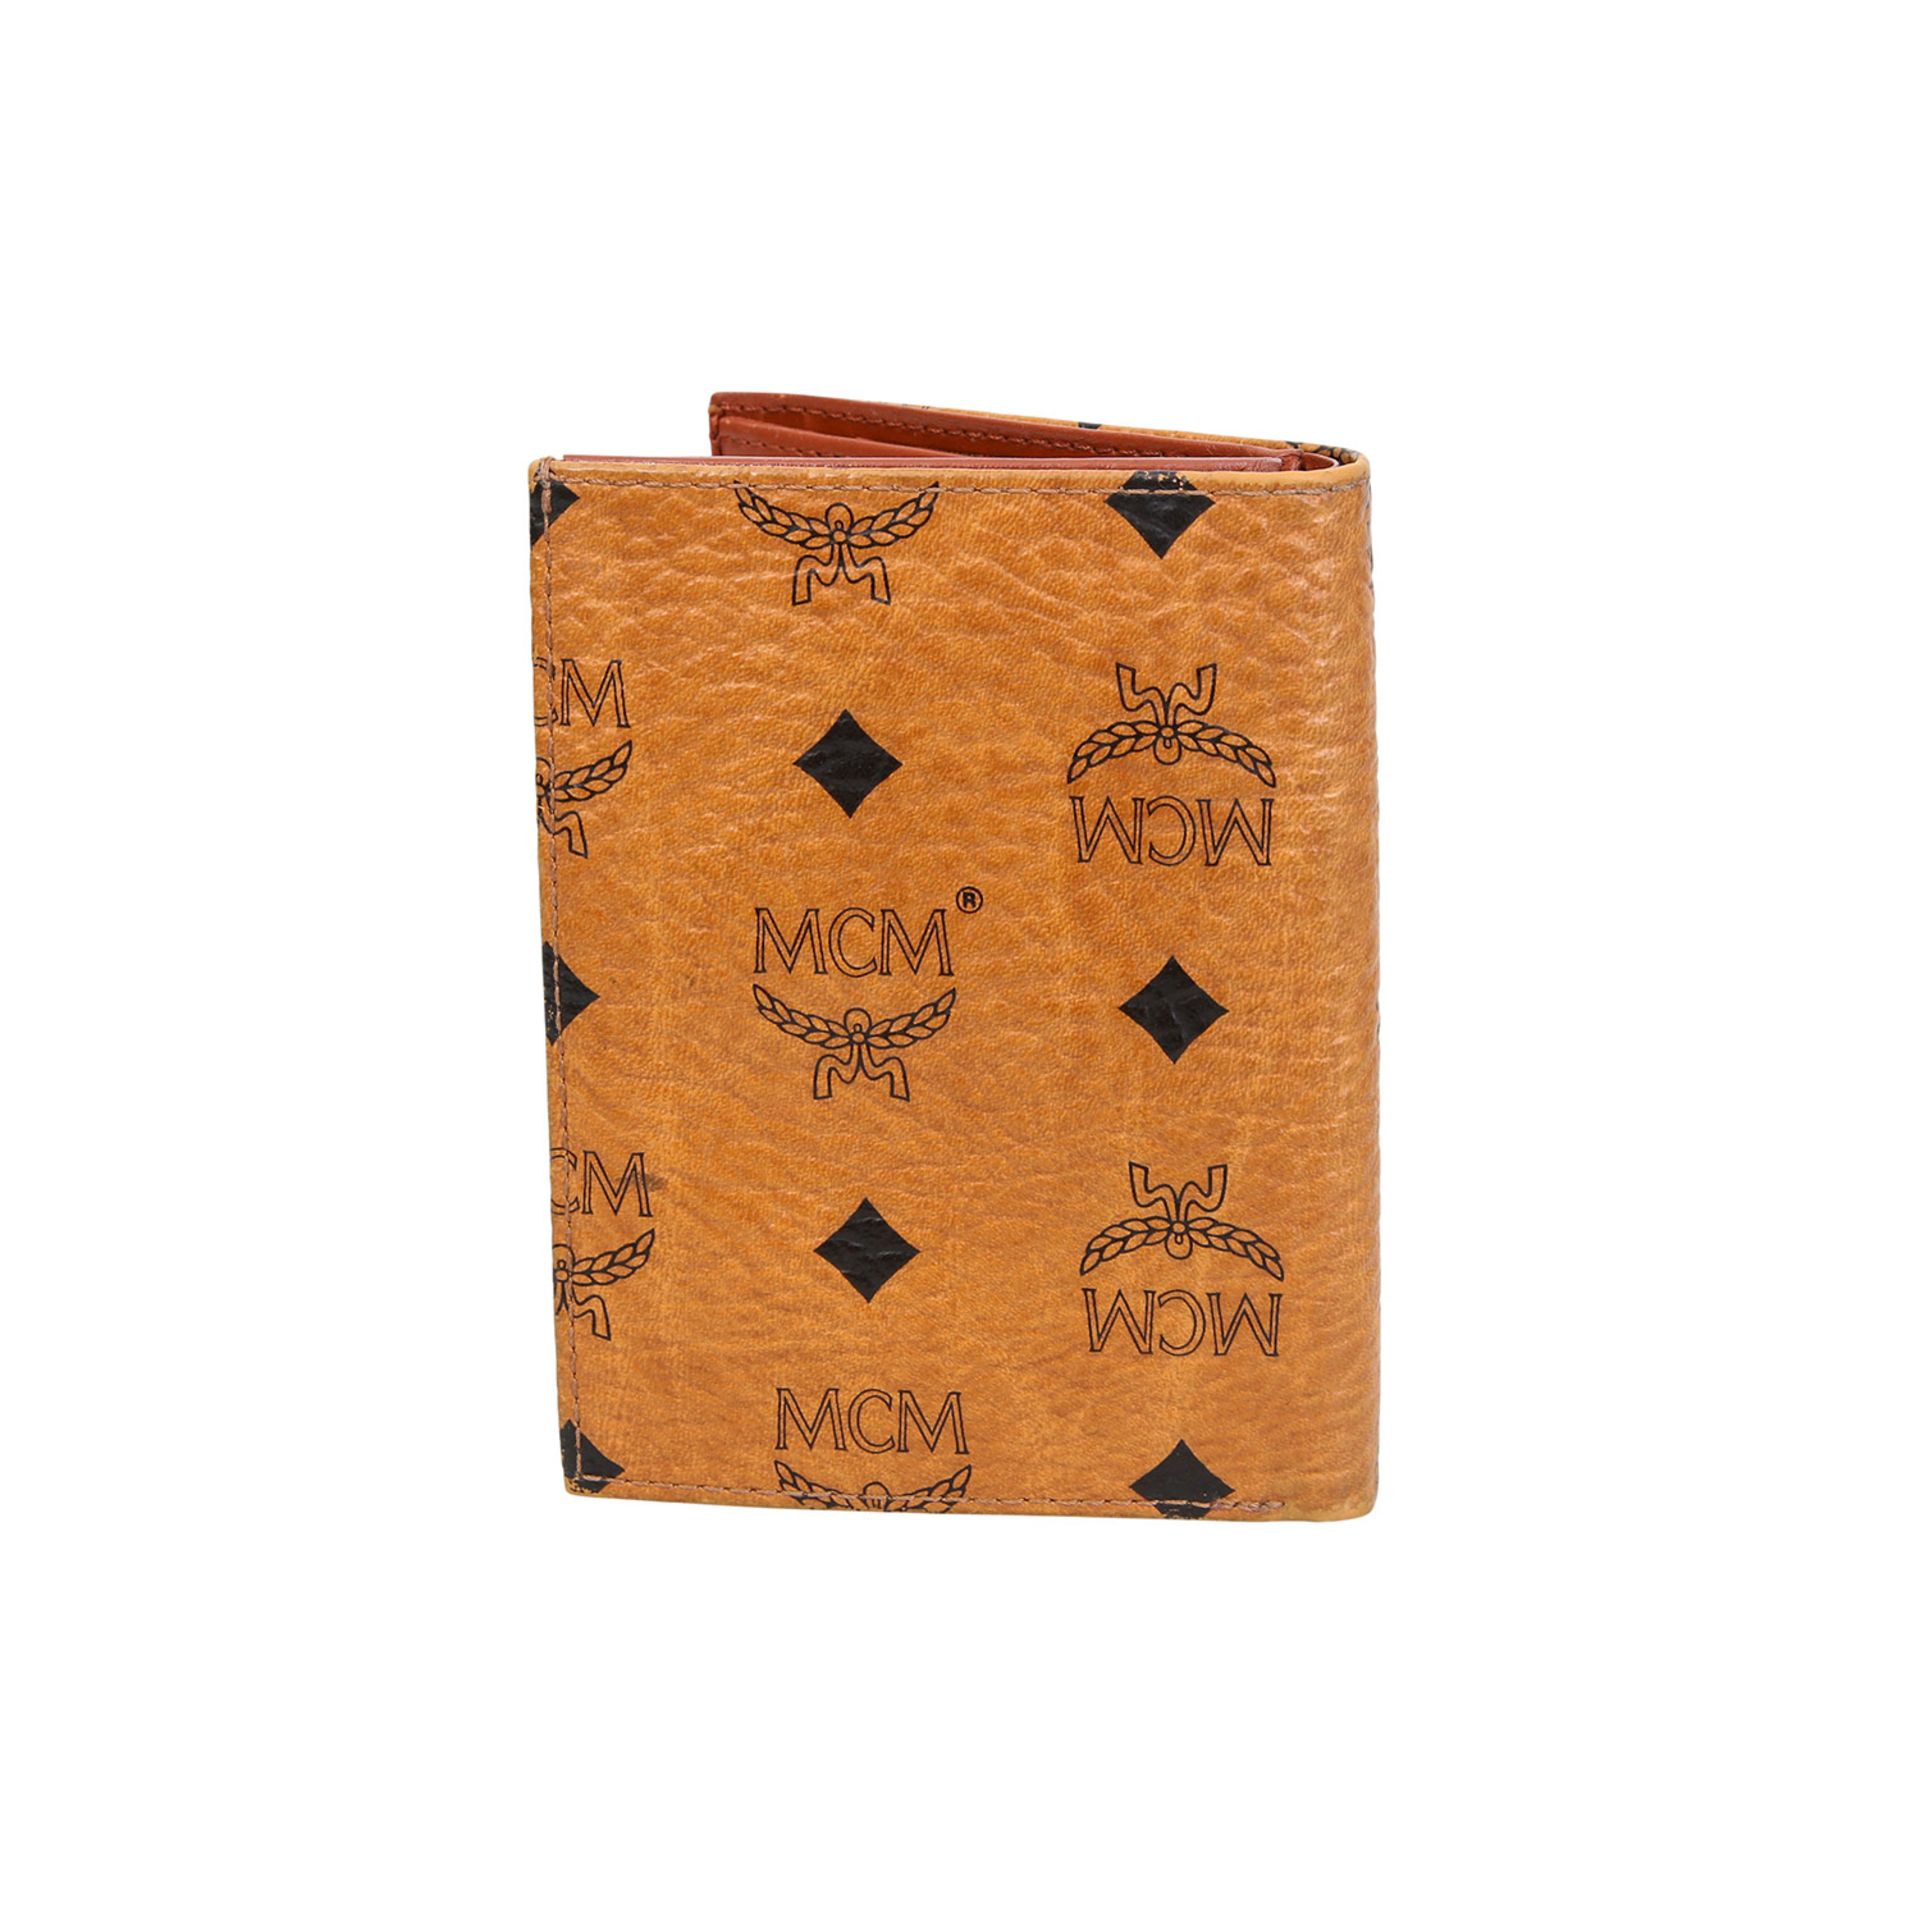 MCM VINTAGE Brieftasche.Heritage Canvas Serie in Cognacfarben mit schwarzem Logo-Print. Innenraum - Bild 3 aus 4